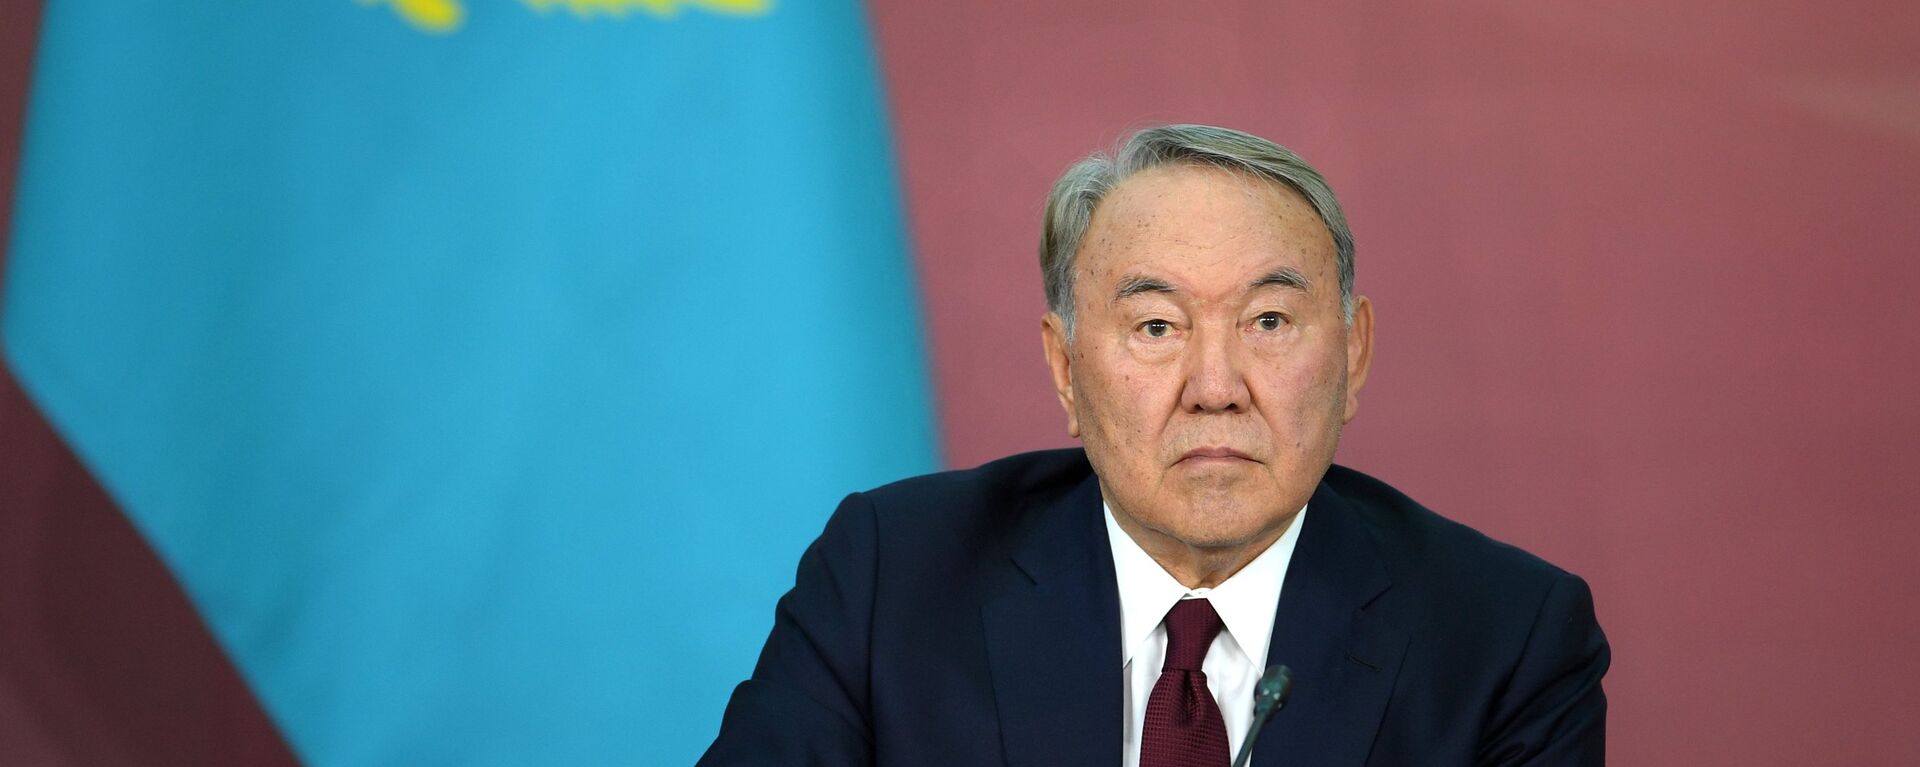 Nursultán Nazarbáev, presidente de Kazajistán - Sputnik Mundo, 1920, 12.01.2022